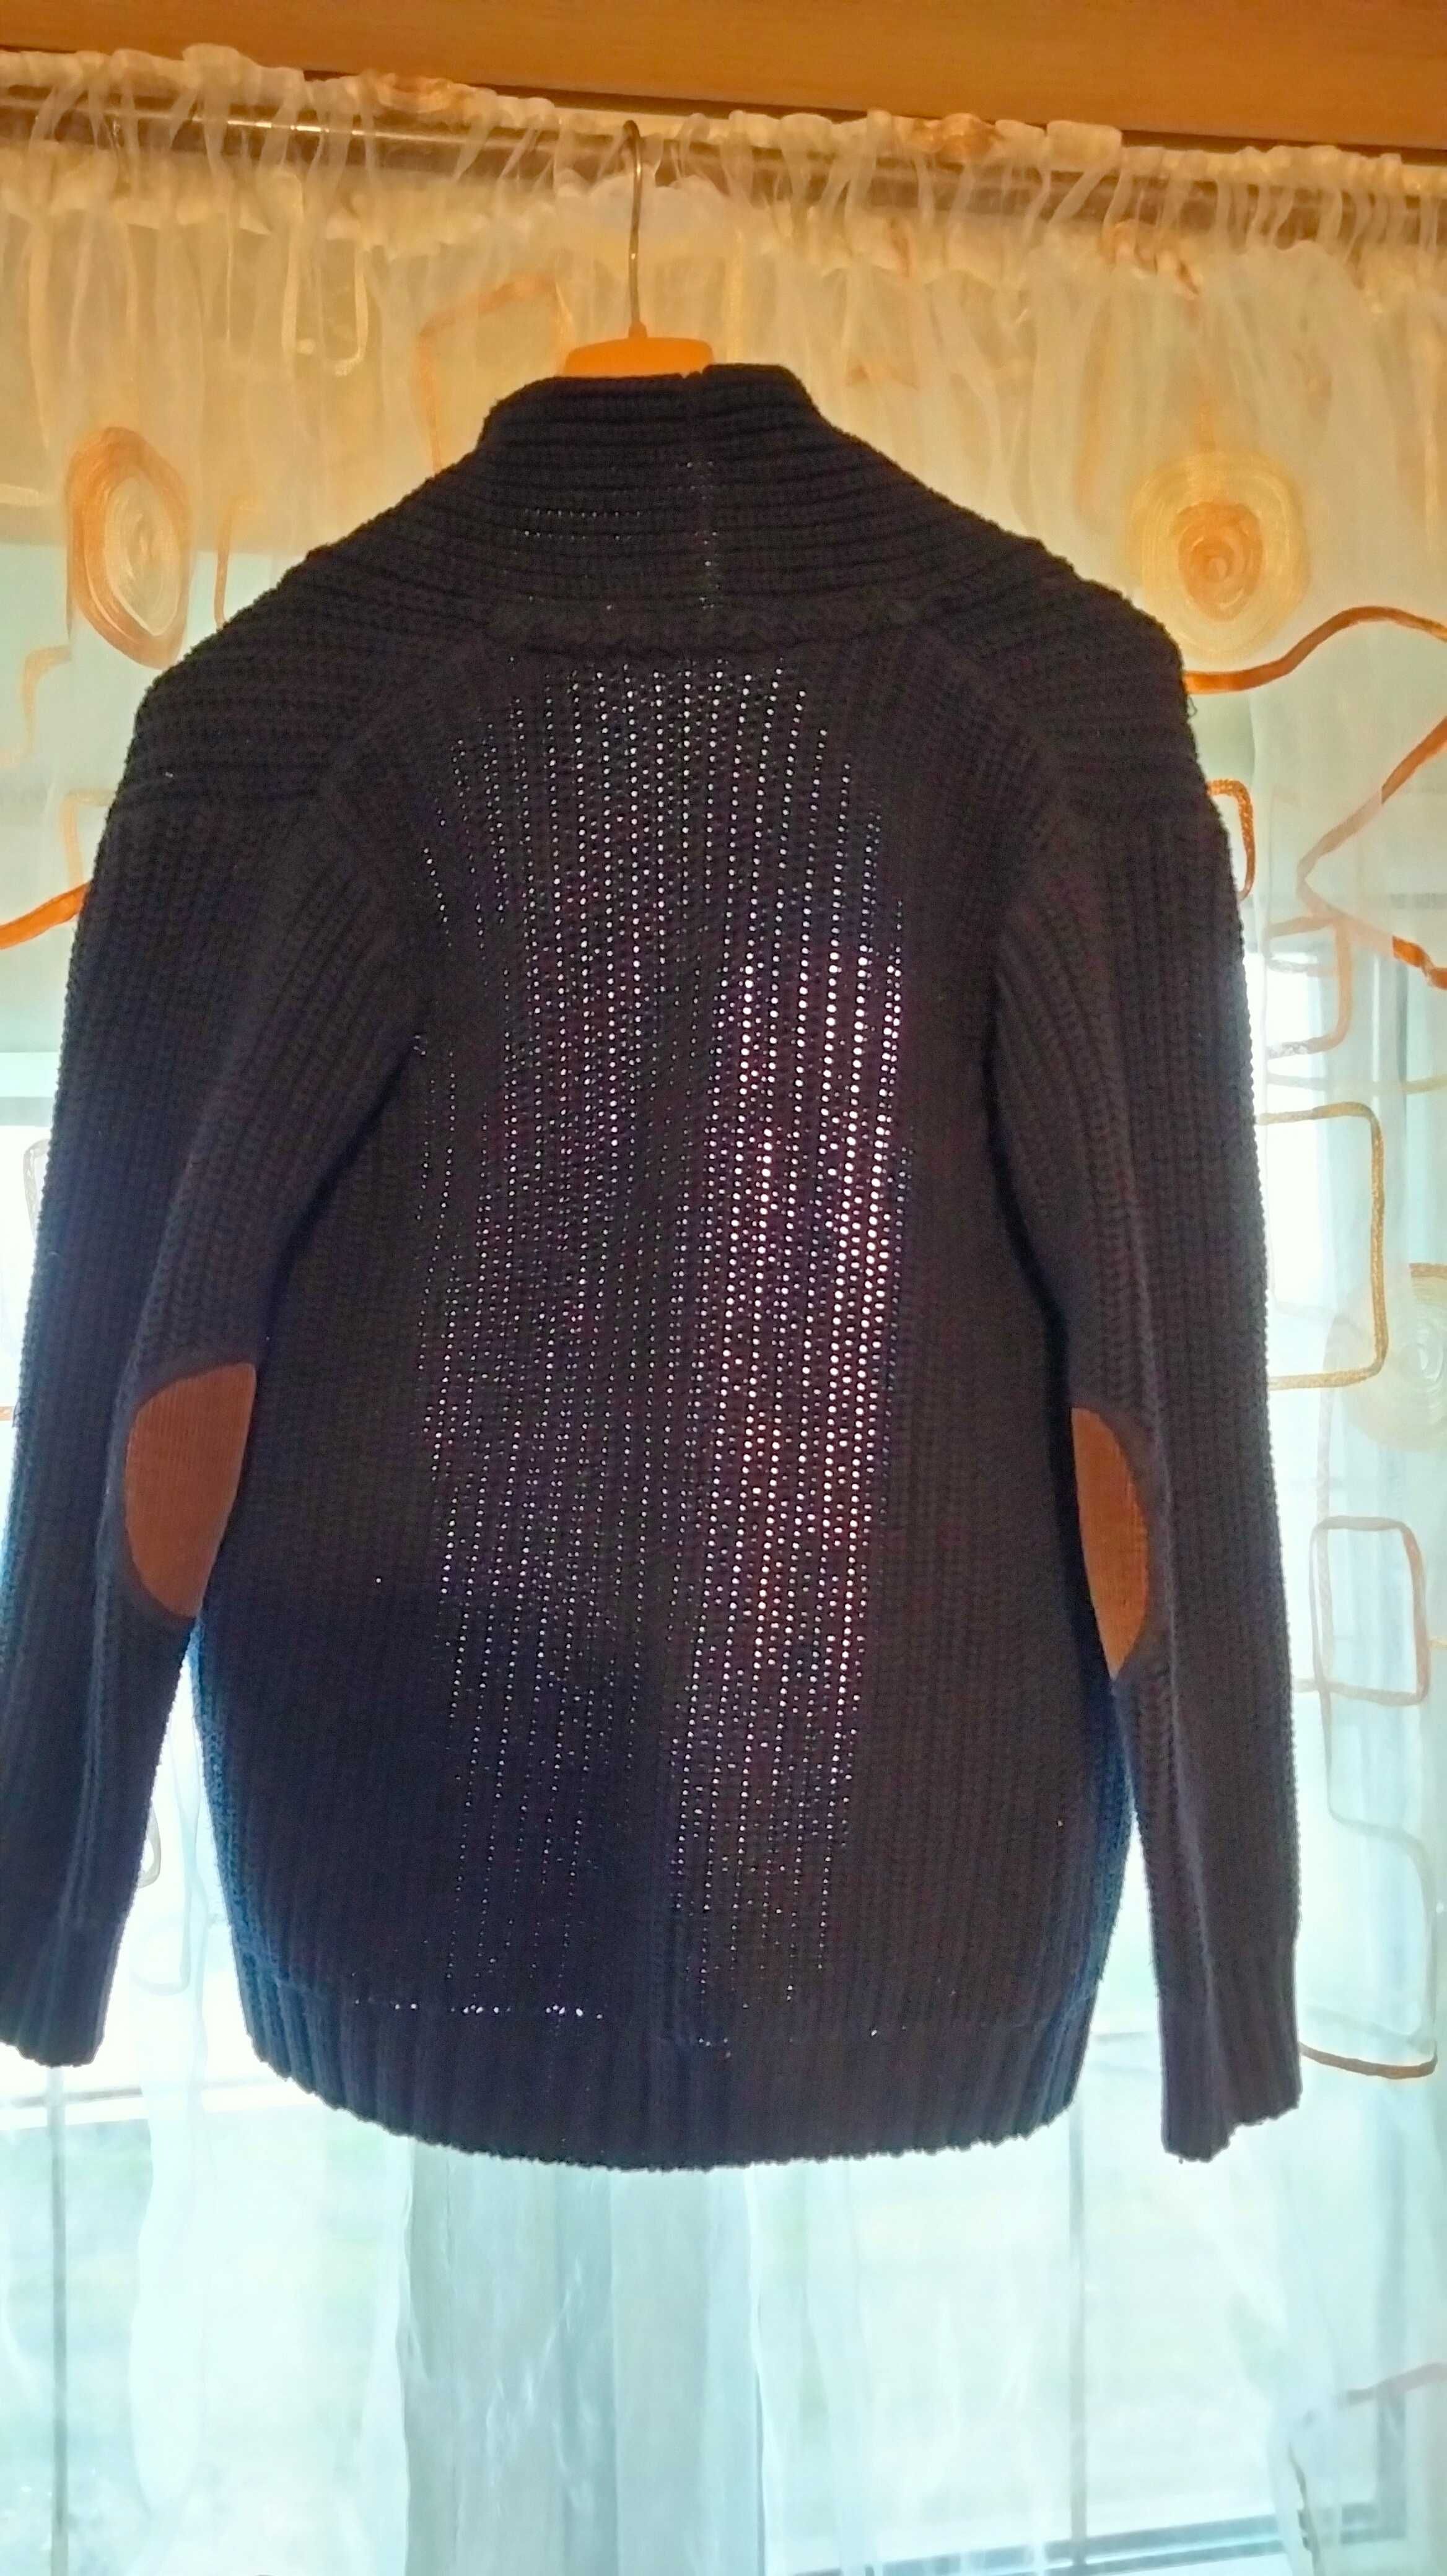 Elegancki sweter na guziki dla chłopca size 116-122. 100% cotton